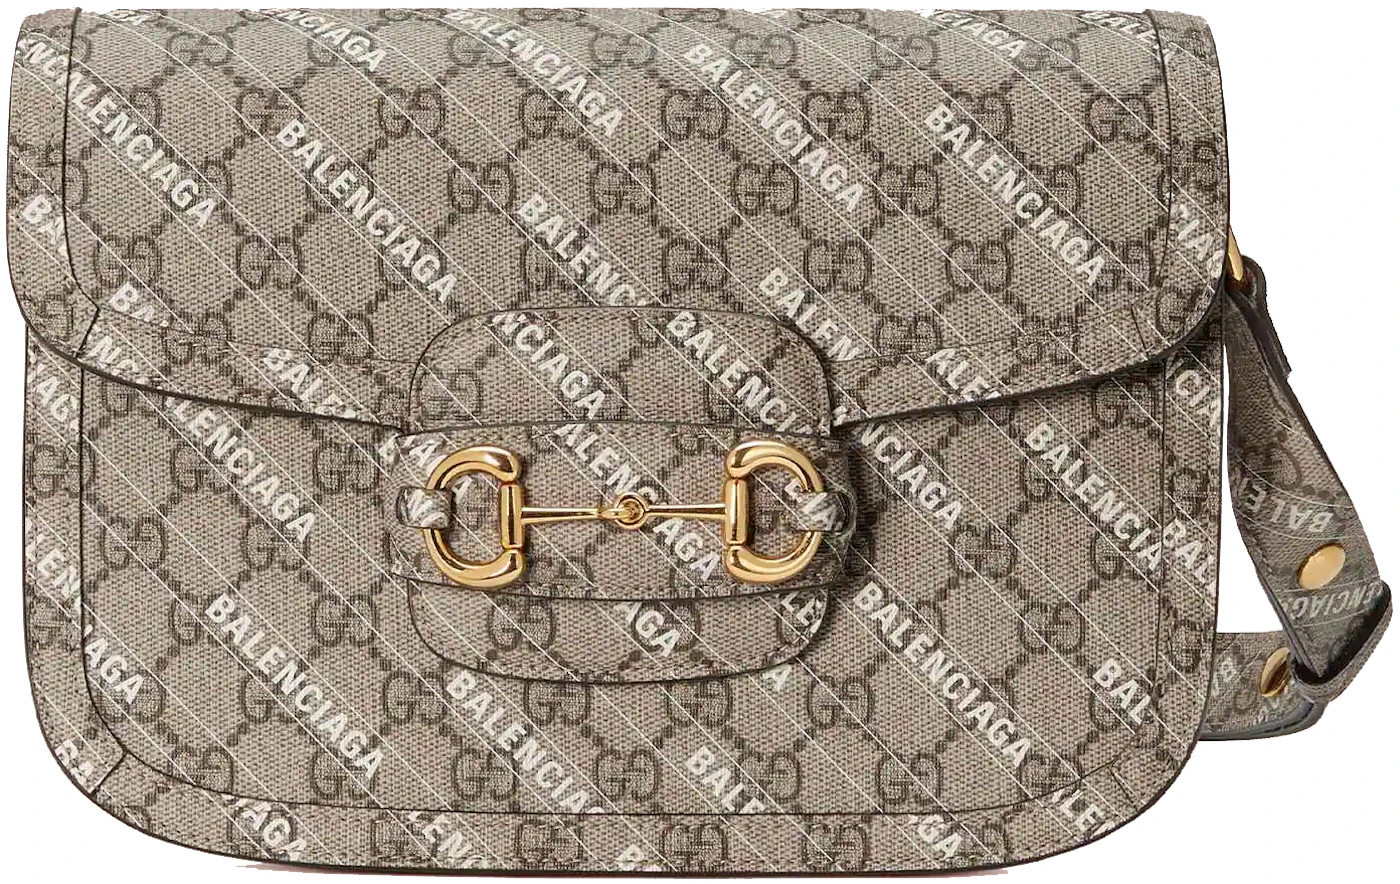 Gucci x Balenciaga Horsebit 1955 Shoulder Bag